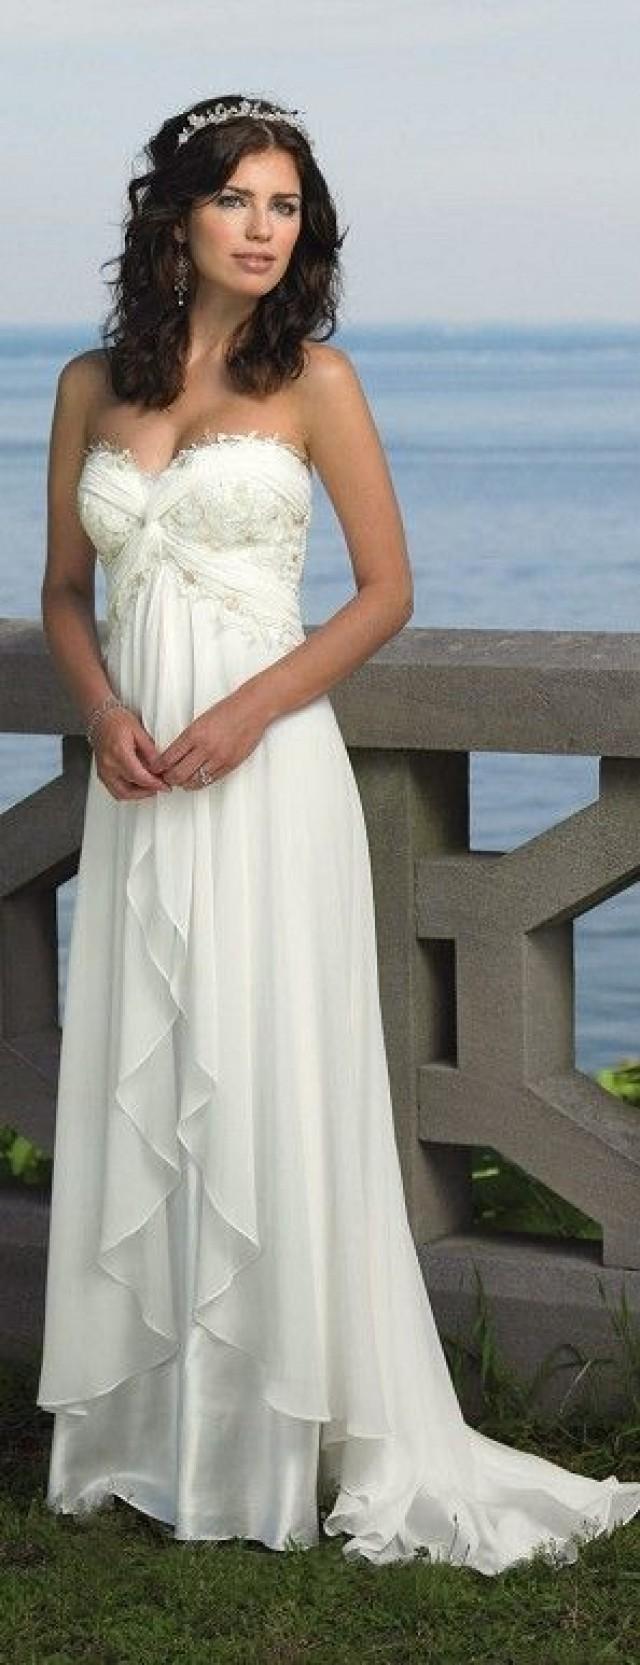 New Off White Chiffon Beach Wedding Dress Bridal Gown Size 10 2176461 Weddbook 3098